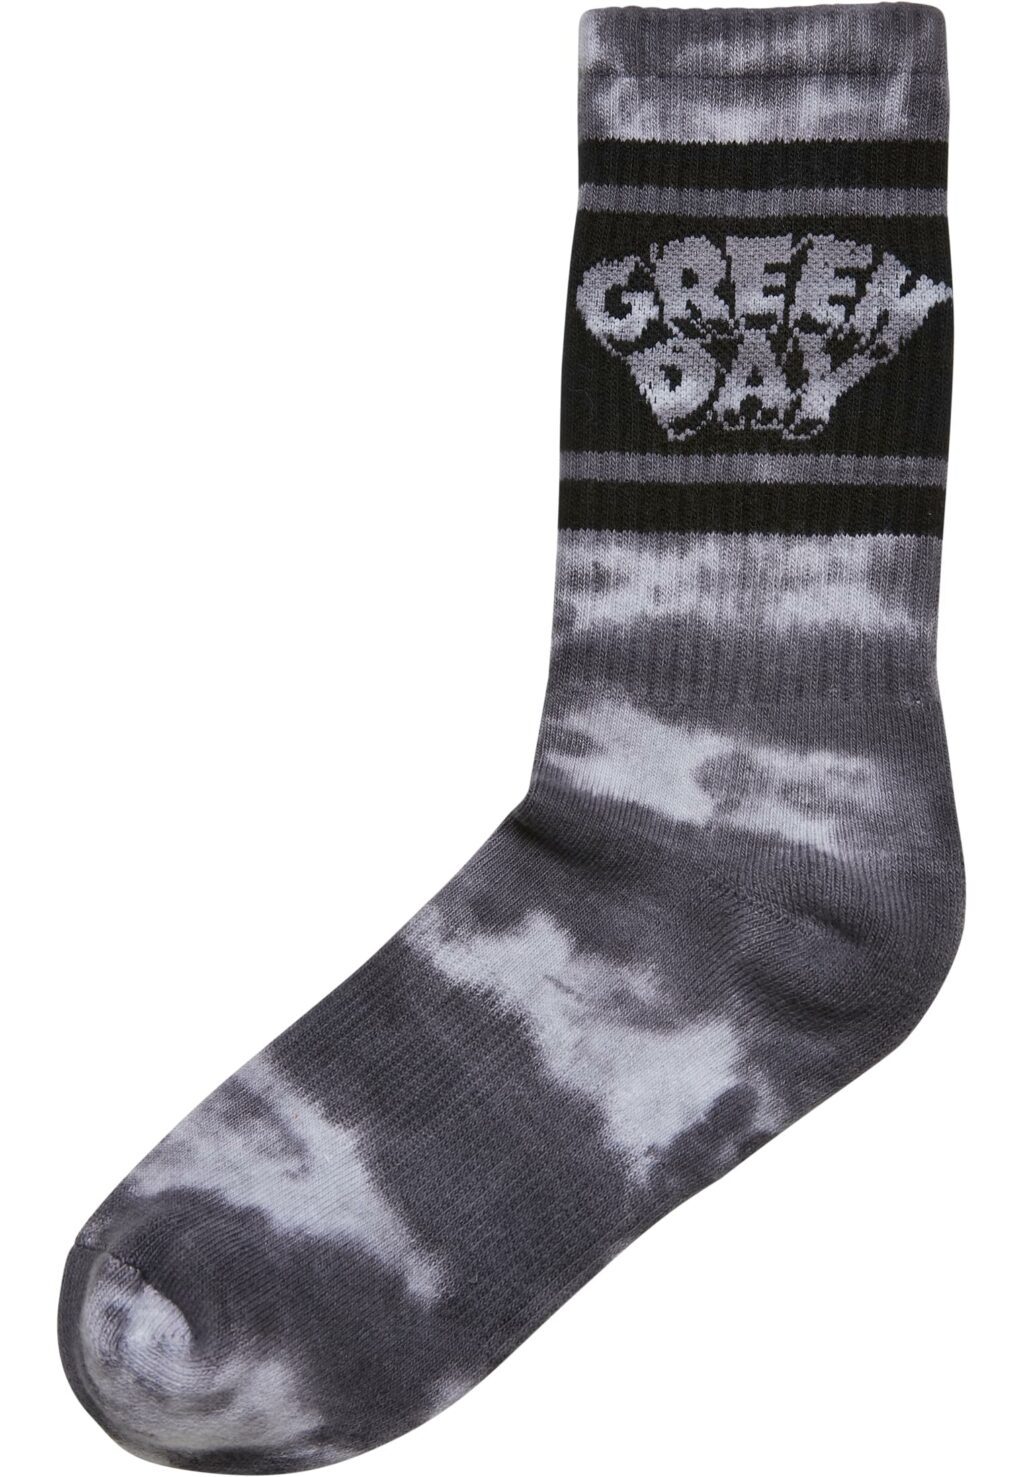 Green Day Tie Die Socks 2-Pack black/white MC812